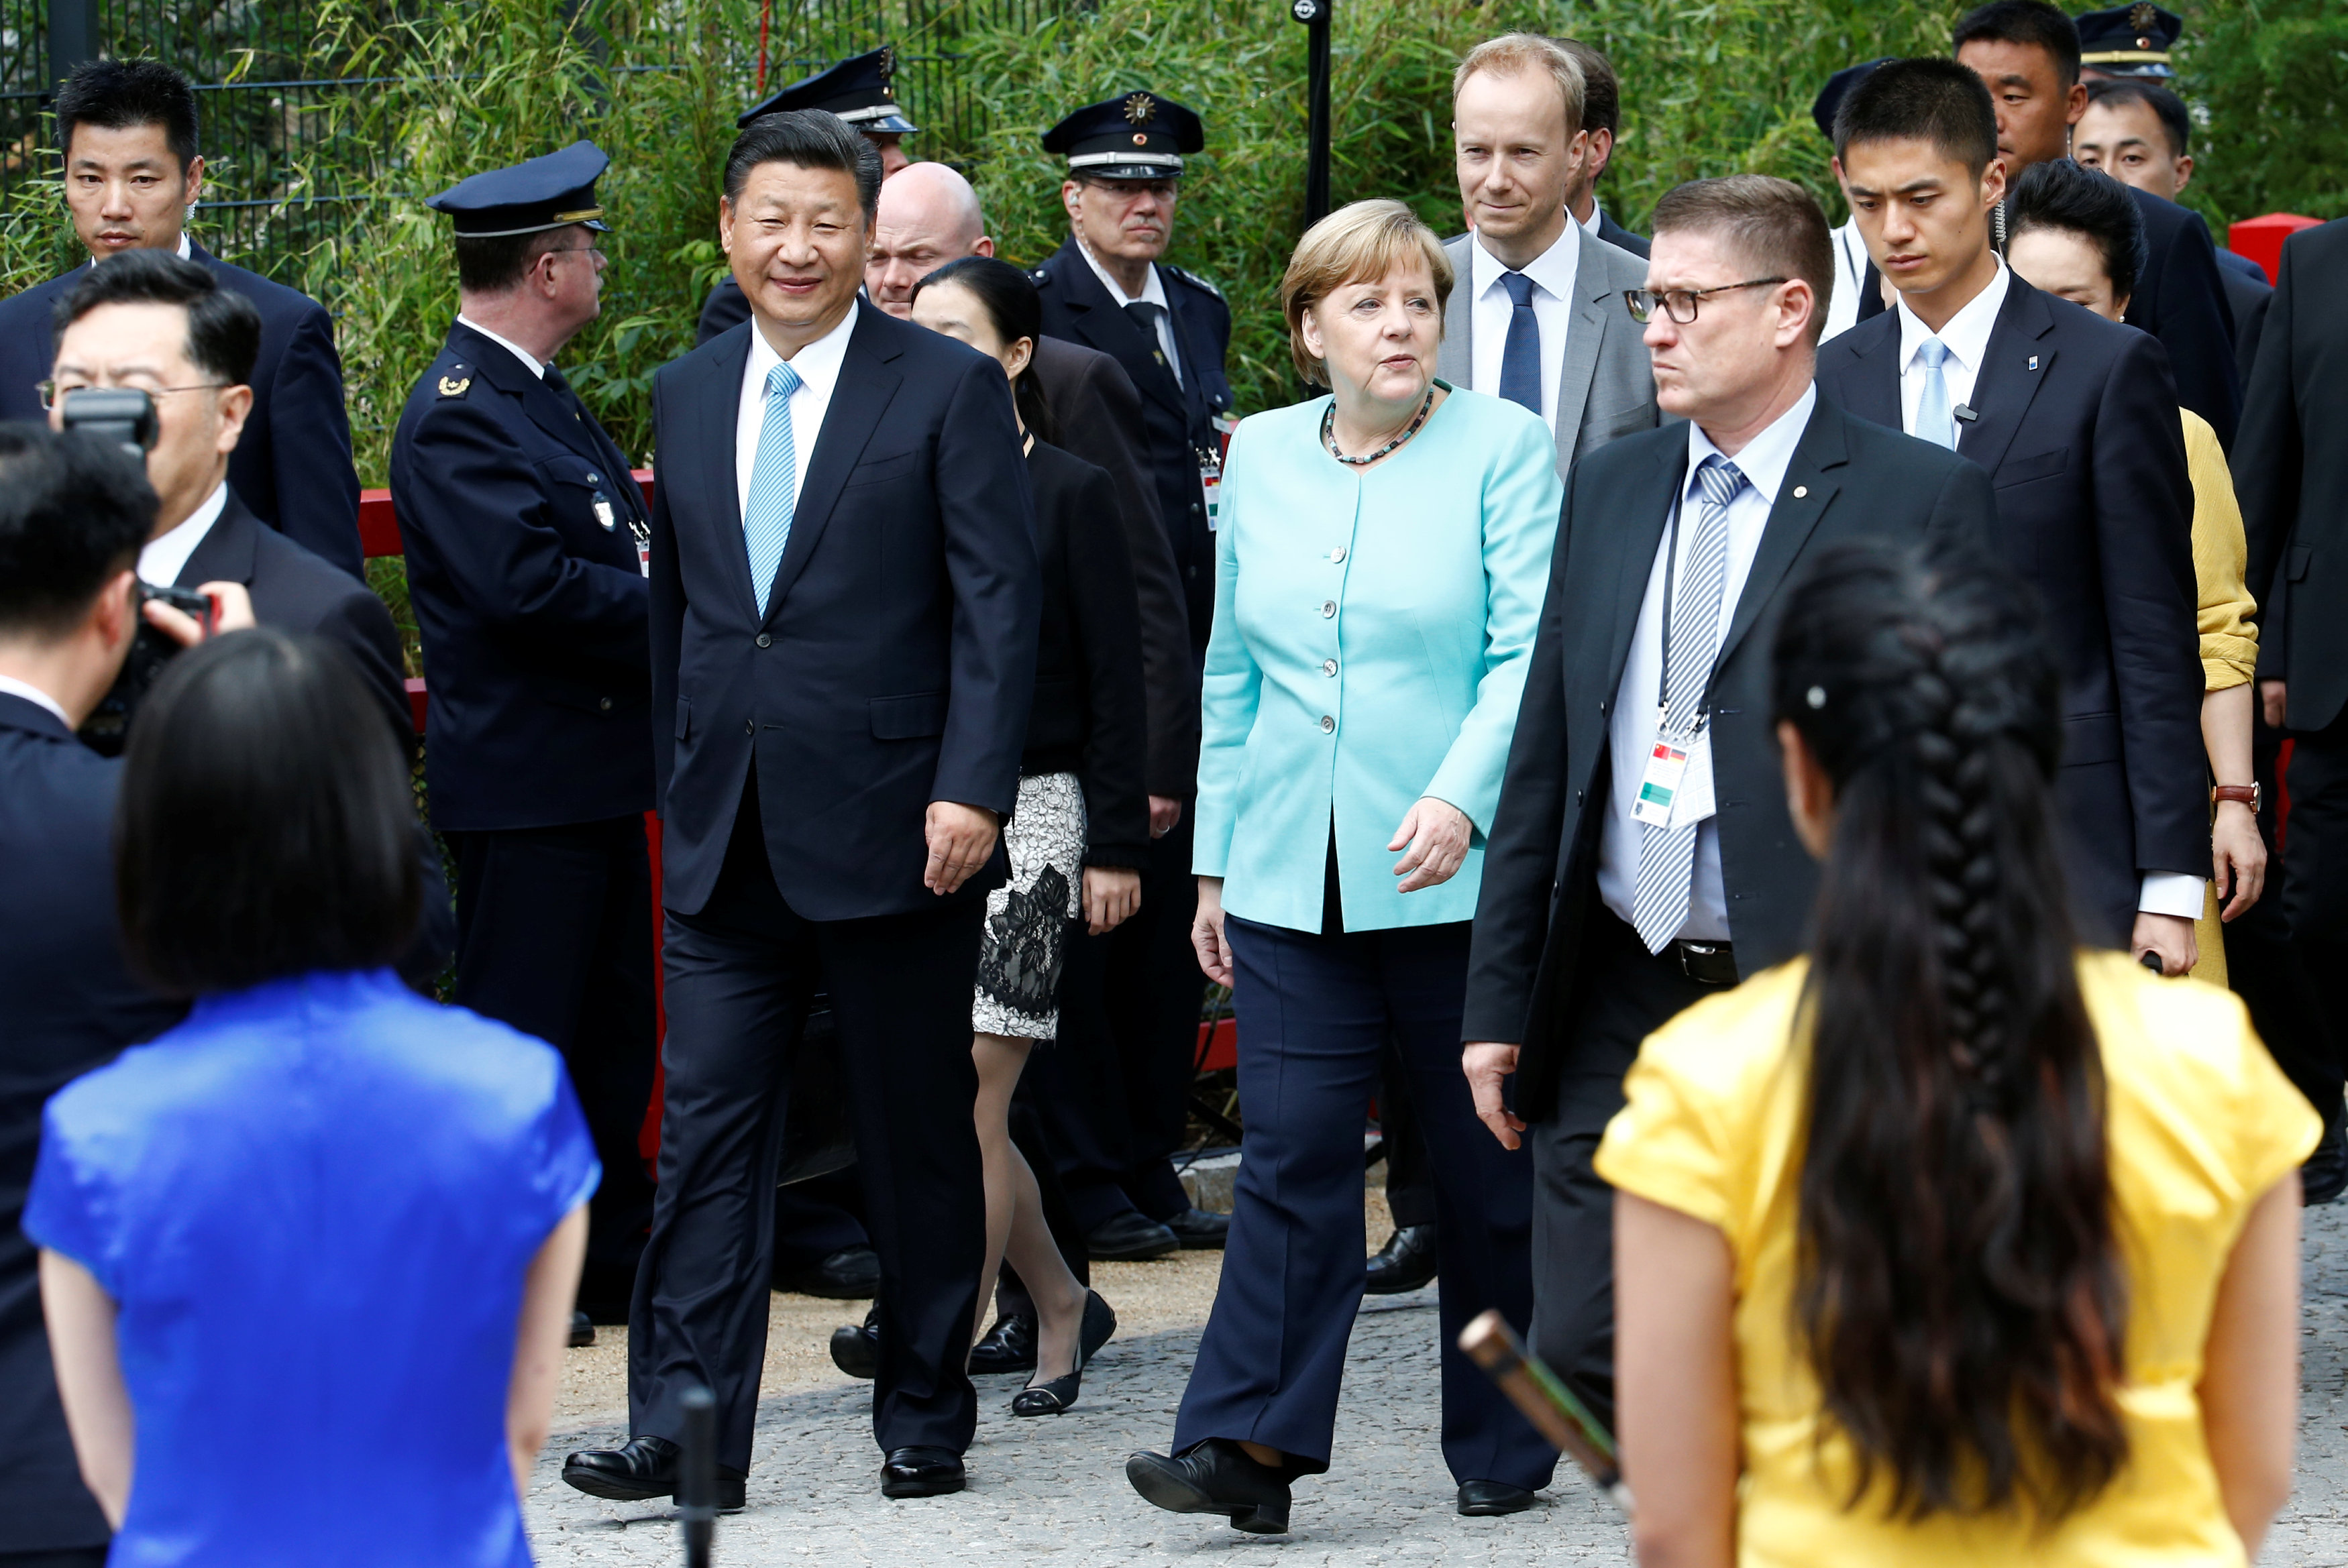 وصول ميركل والرئيس الصينى إلى حديقة حيوان برلين